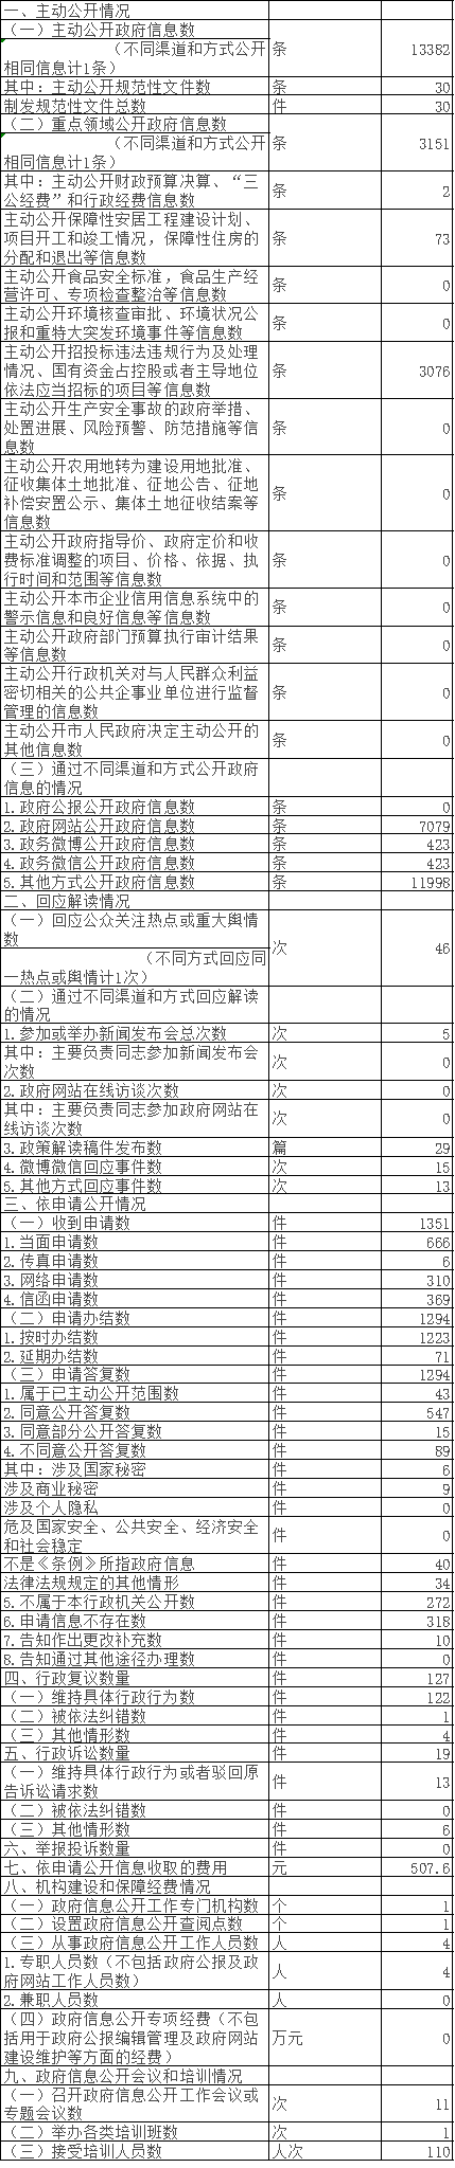 北京市住房和城乡建设委员会政府信息公开情况统计表(2017年度)